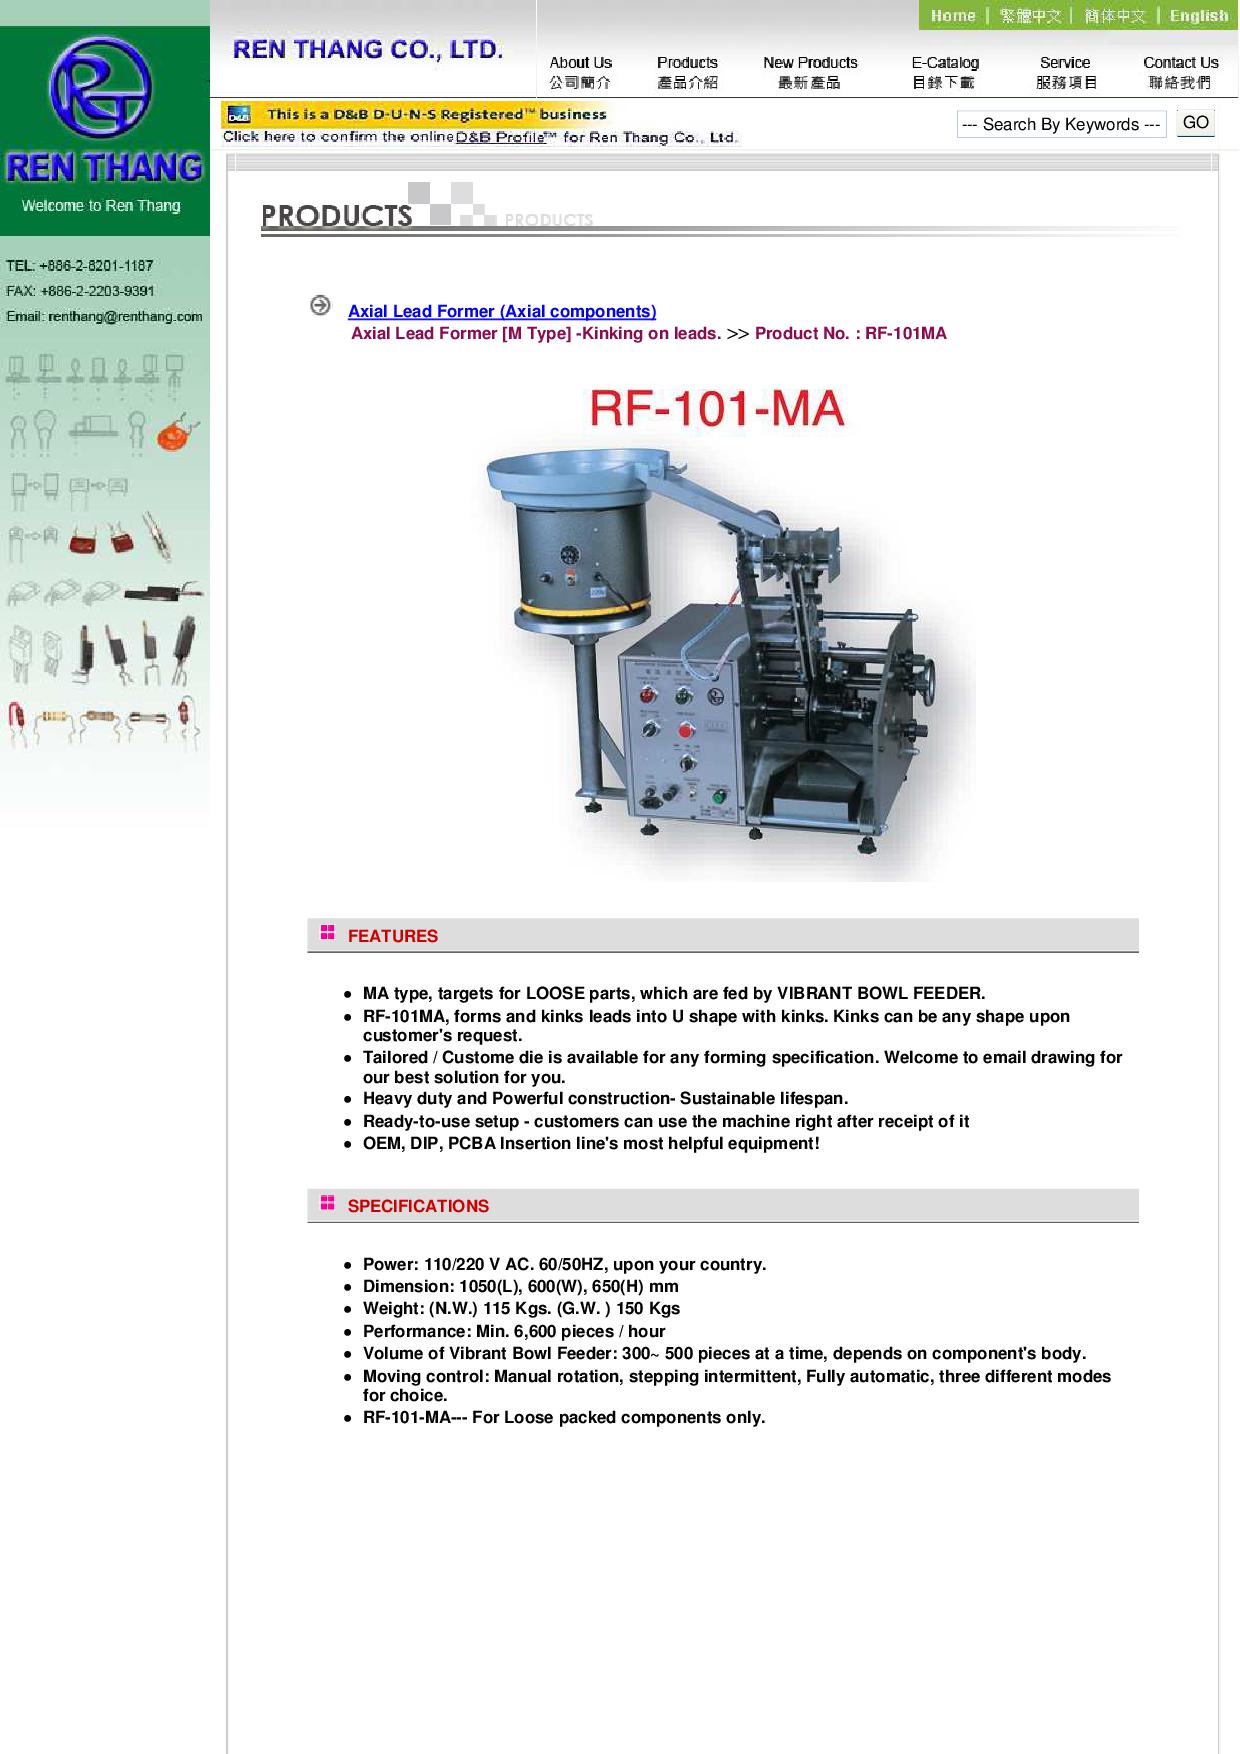  电阻成型机 (轴向零件) >> 电阻成型机 ( M型-卧式成型 ，散装振动入料盘) >> Product No. : RF-101MA